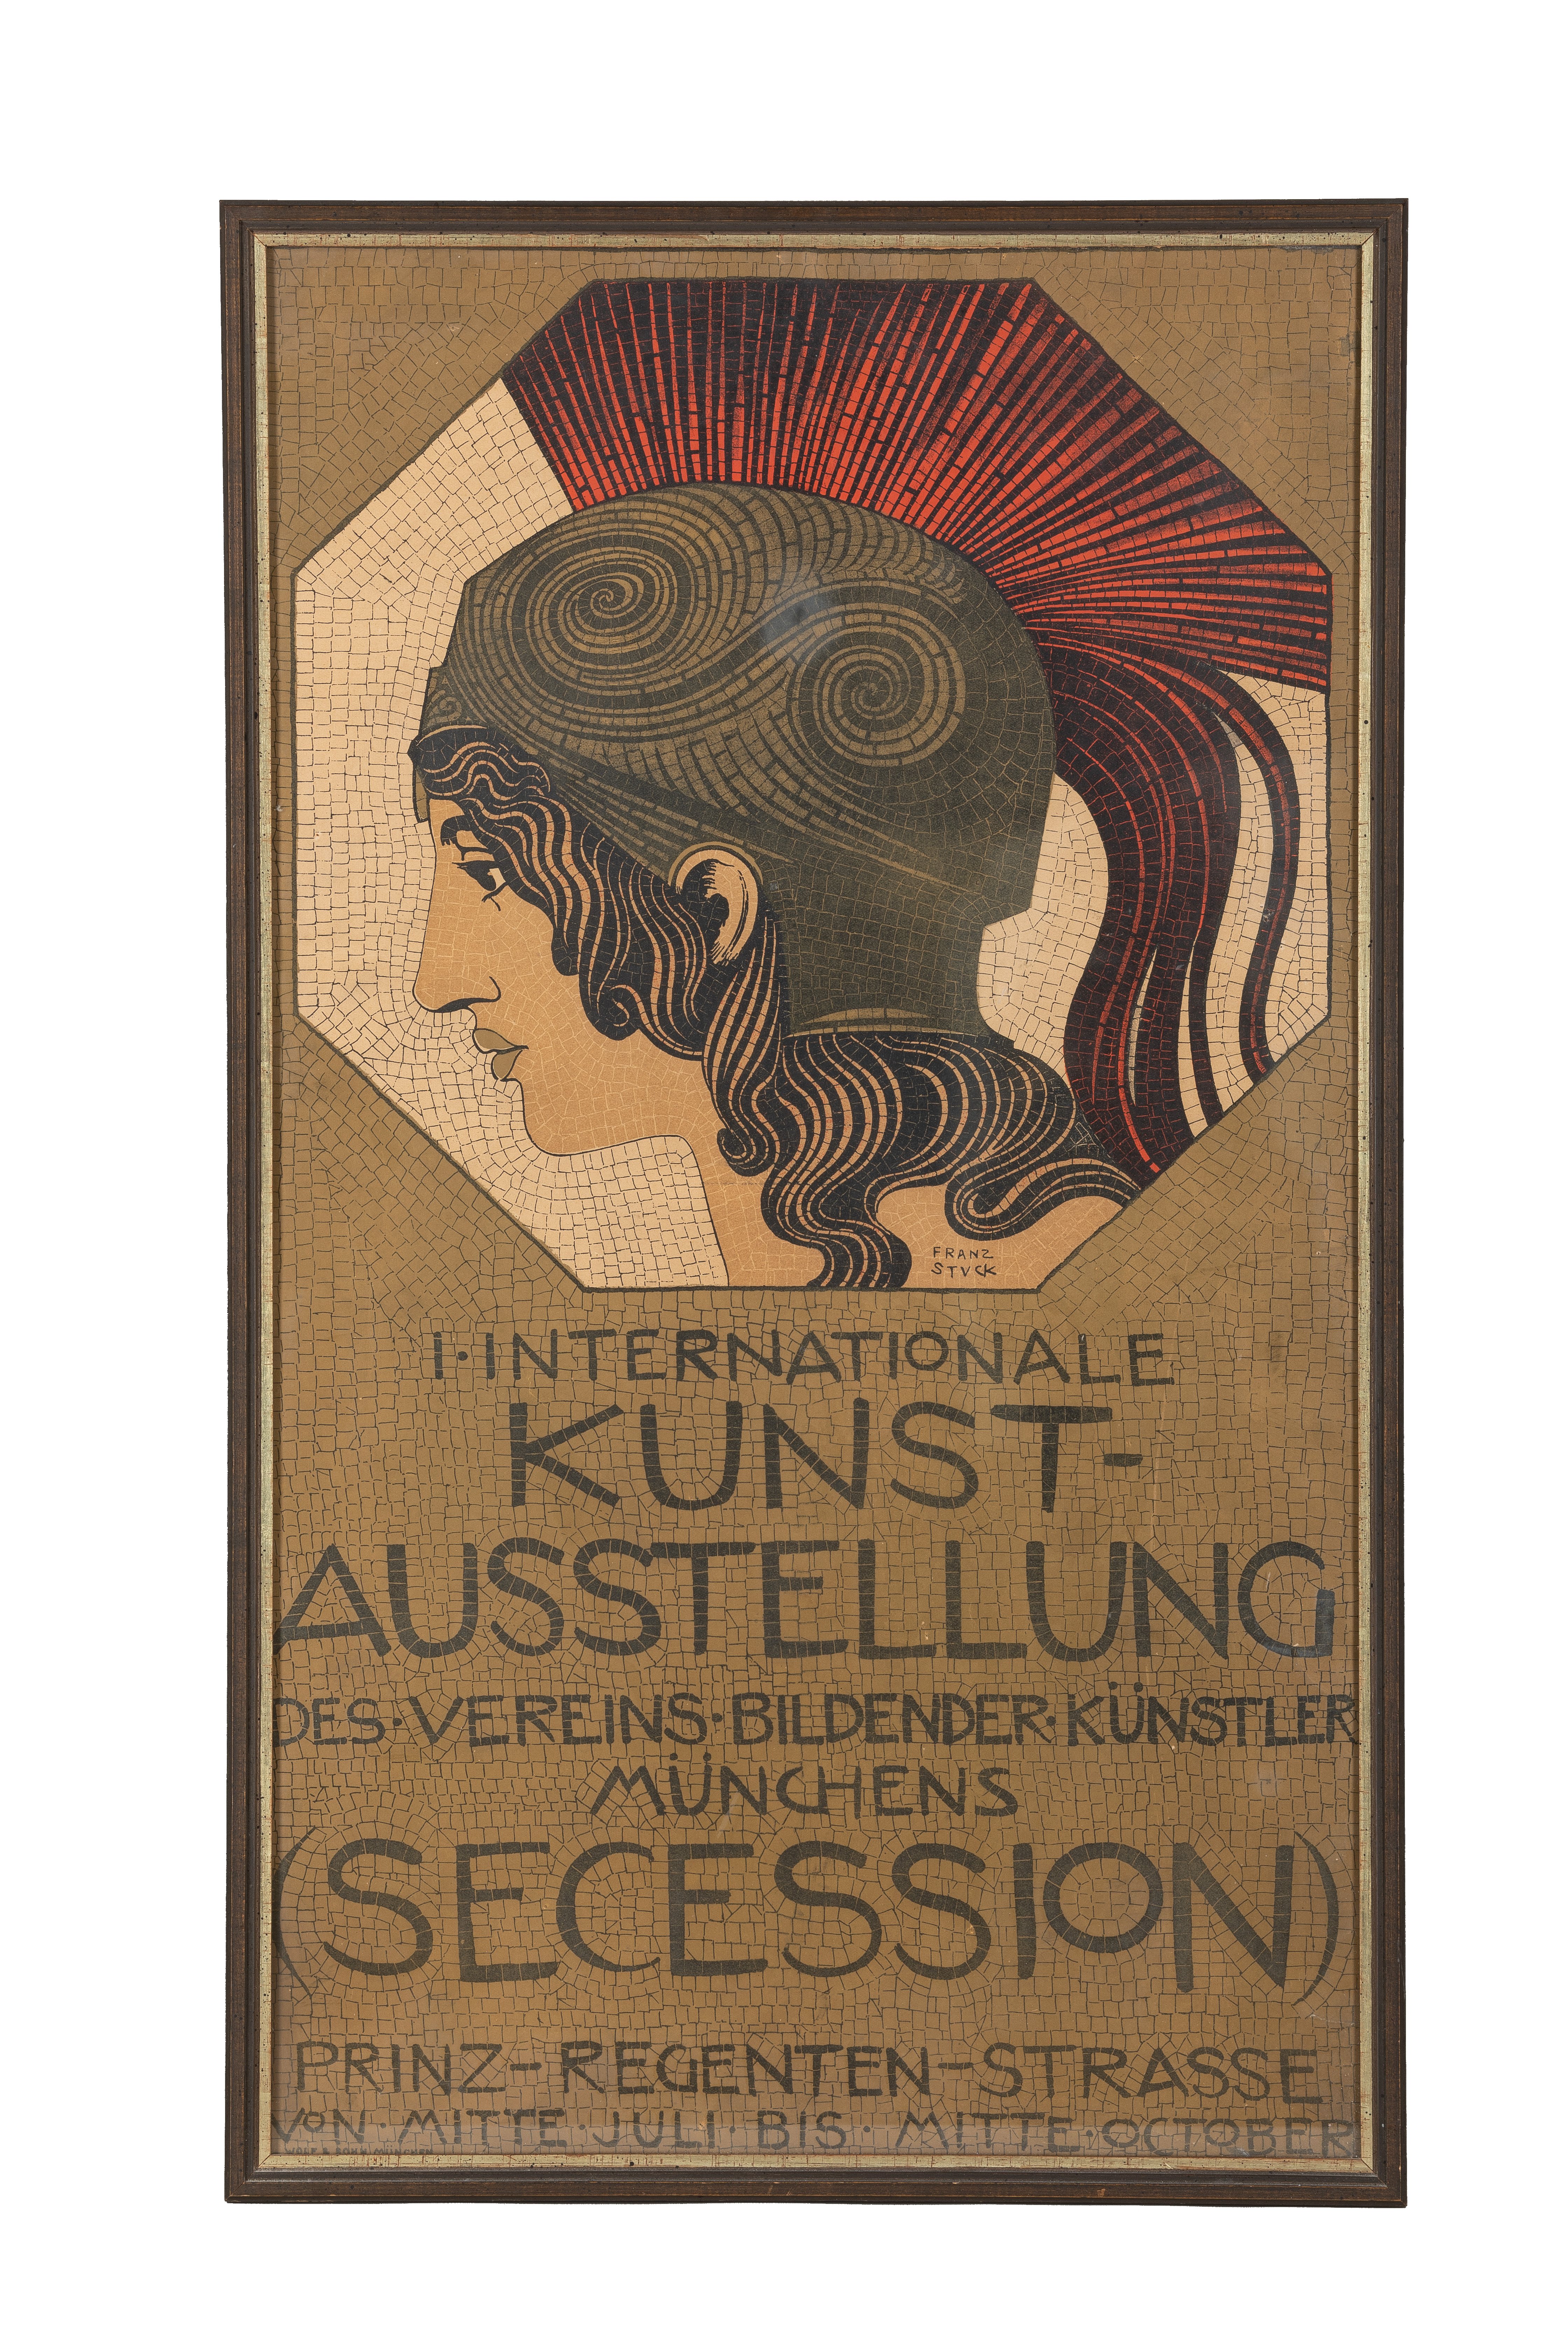 Plakat für die Internationale Kunst-Ausstellung des Vereins bildender Künstler Münchens (Secession) (Sammlung Wulff Stiftung CC BY-NC-SA)